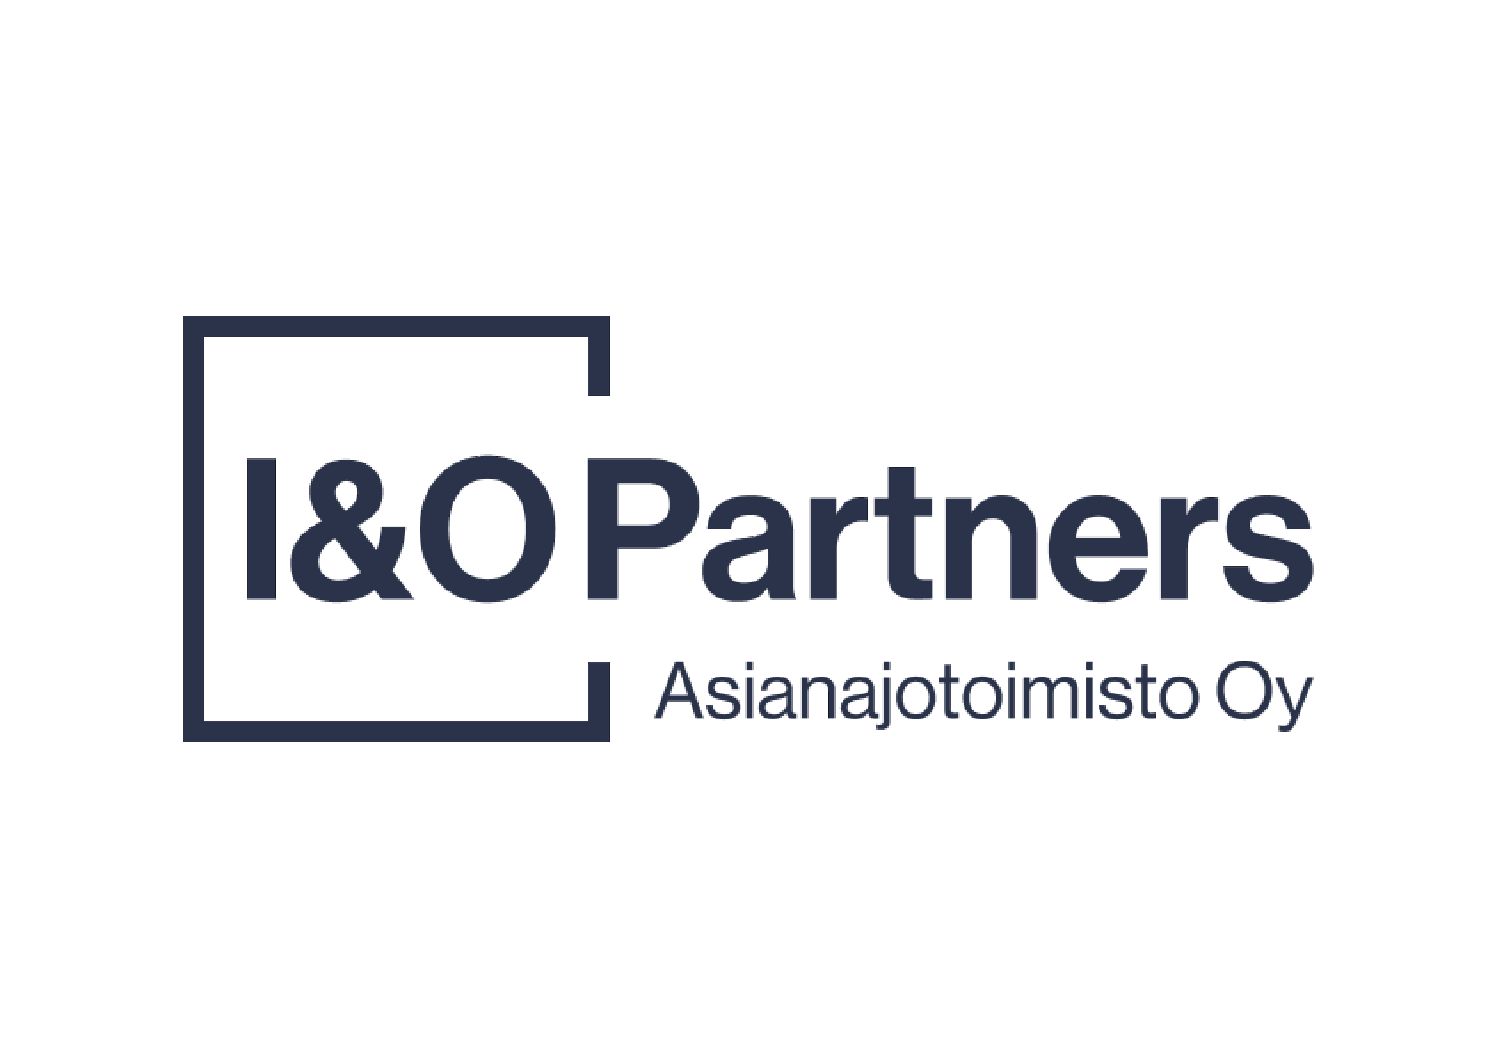 I&O Partners